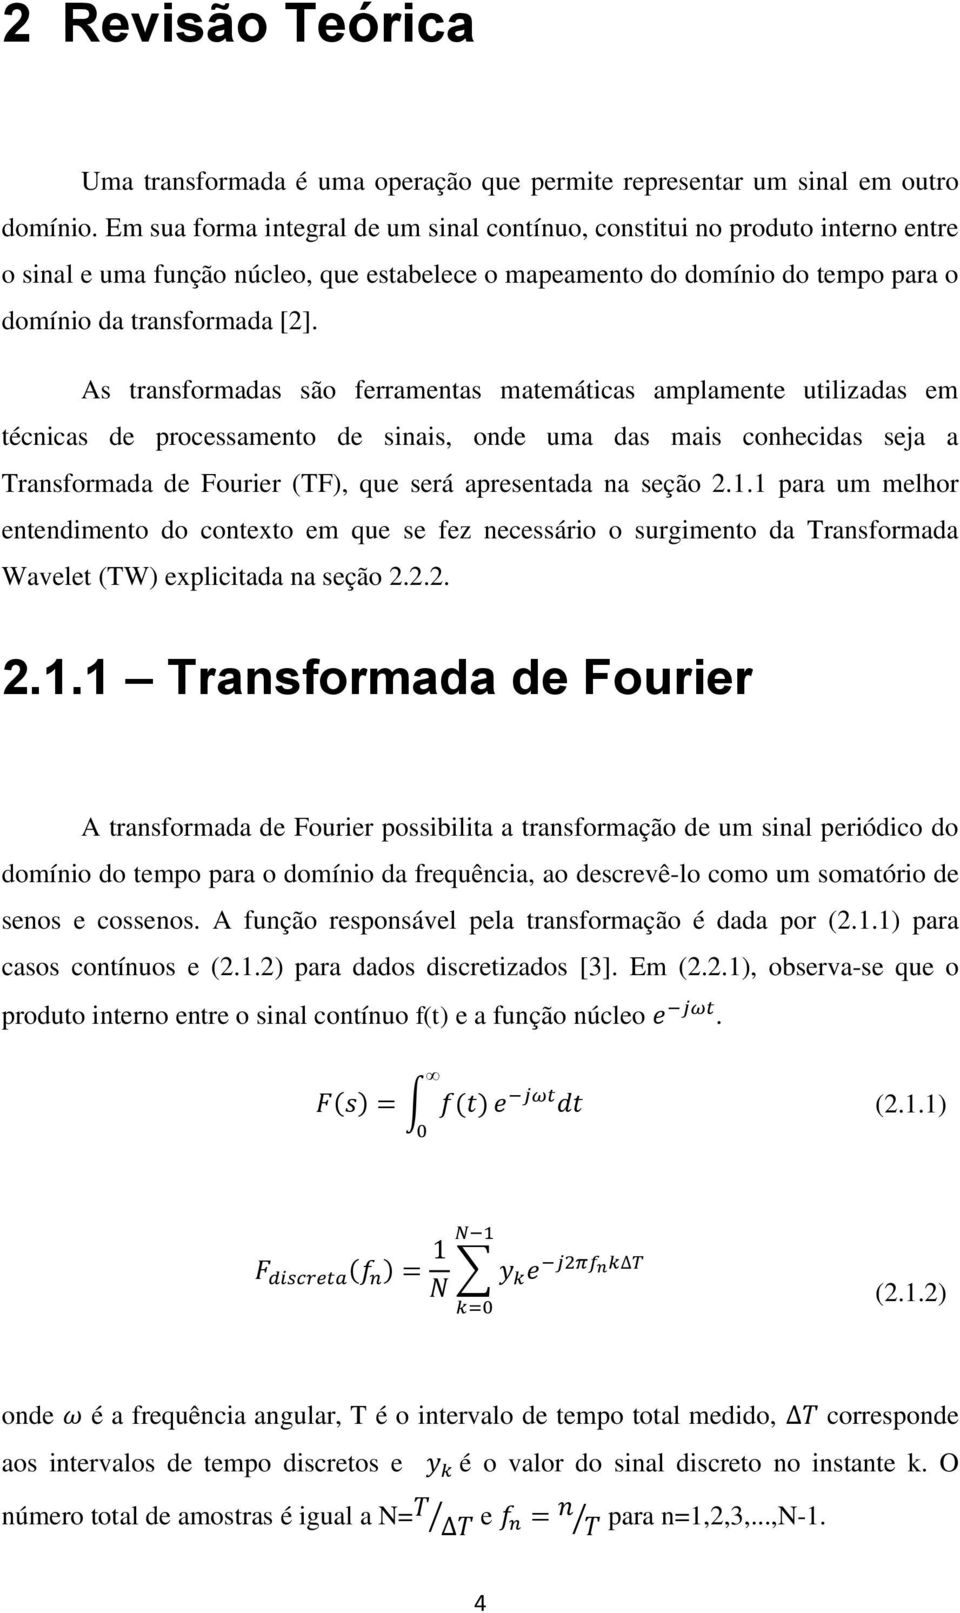 As transformadas são ferramentas matemáticas amplamente utilizadas em técnicas de processamento de sinais, onde uma das mais conhecidas seja a Transformada de Fourier (TF), que será apresentada na